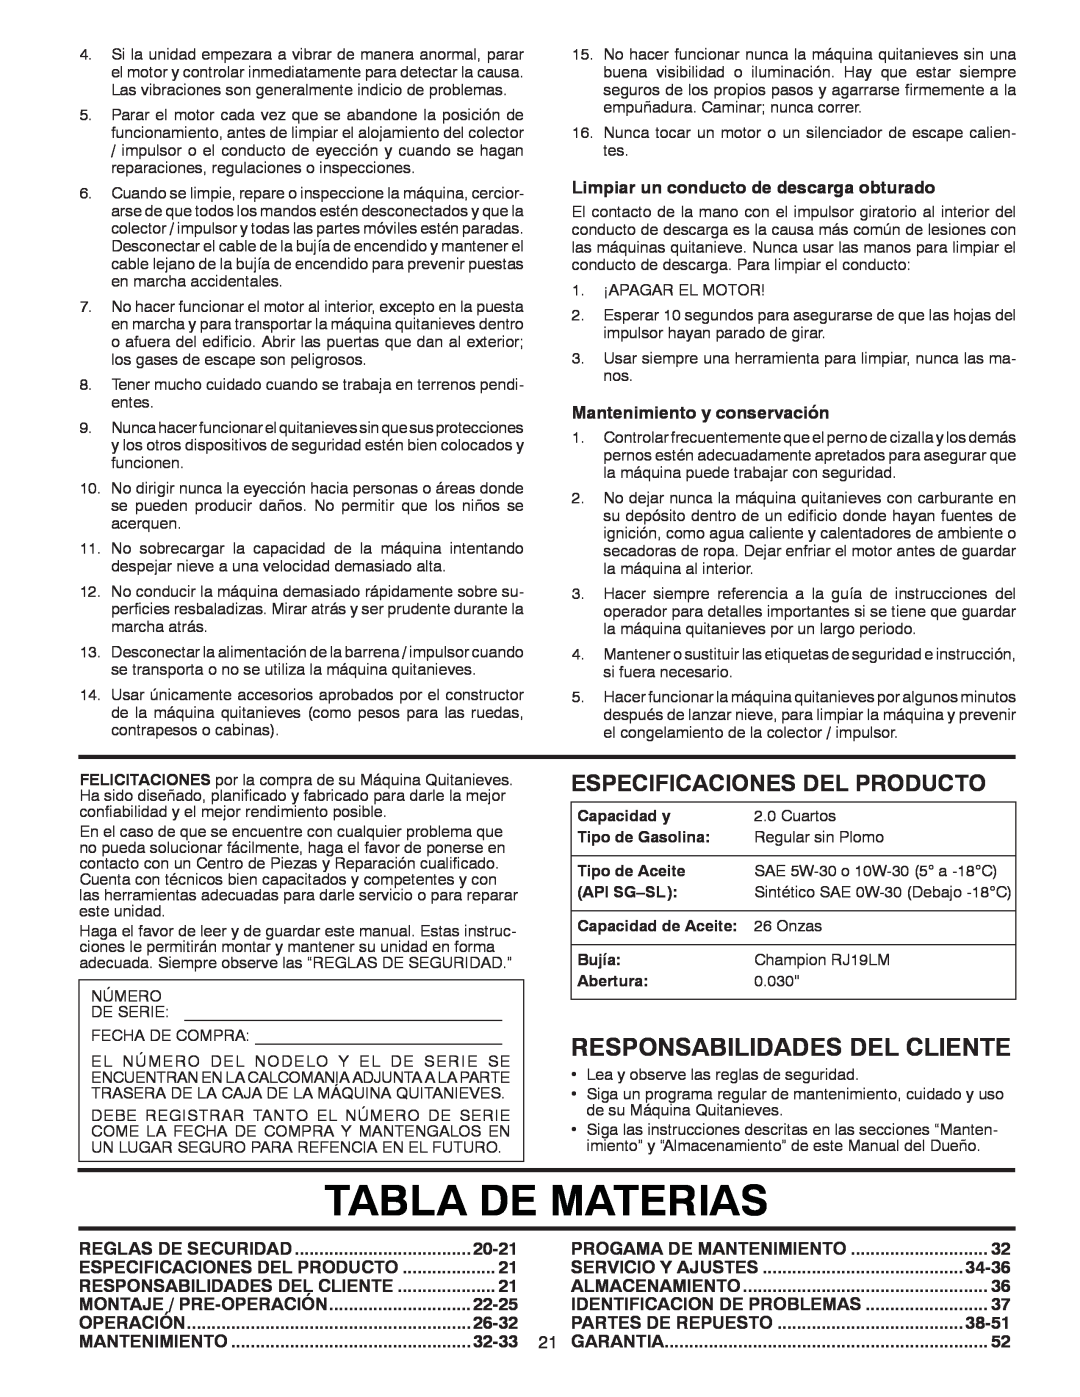 Poulan 414949 Responsabilidades Del Cliente, Tabla De Materias, Especificaciones Del Producto, 20-21, 22-25, 26-32, 32-33 